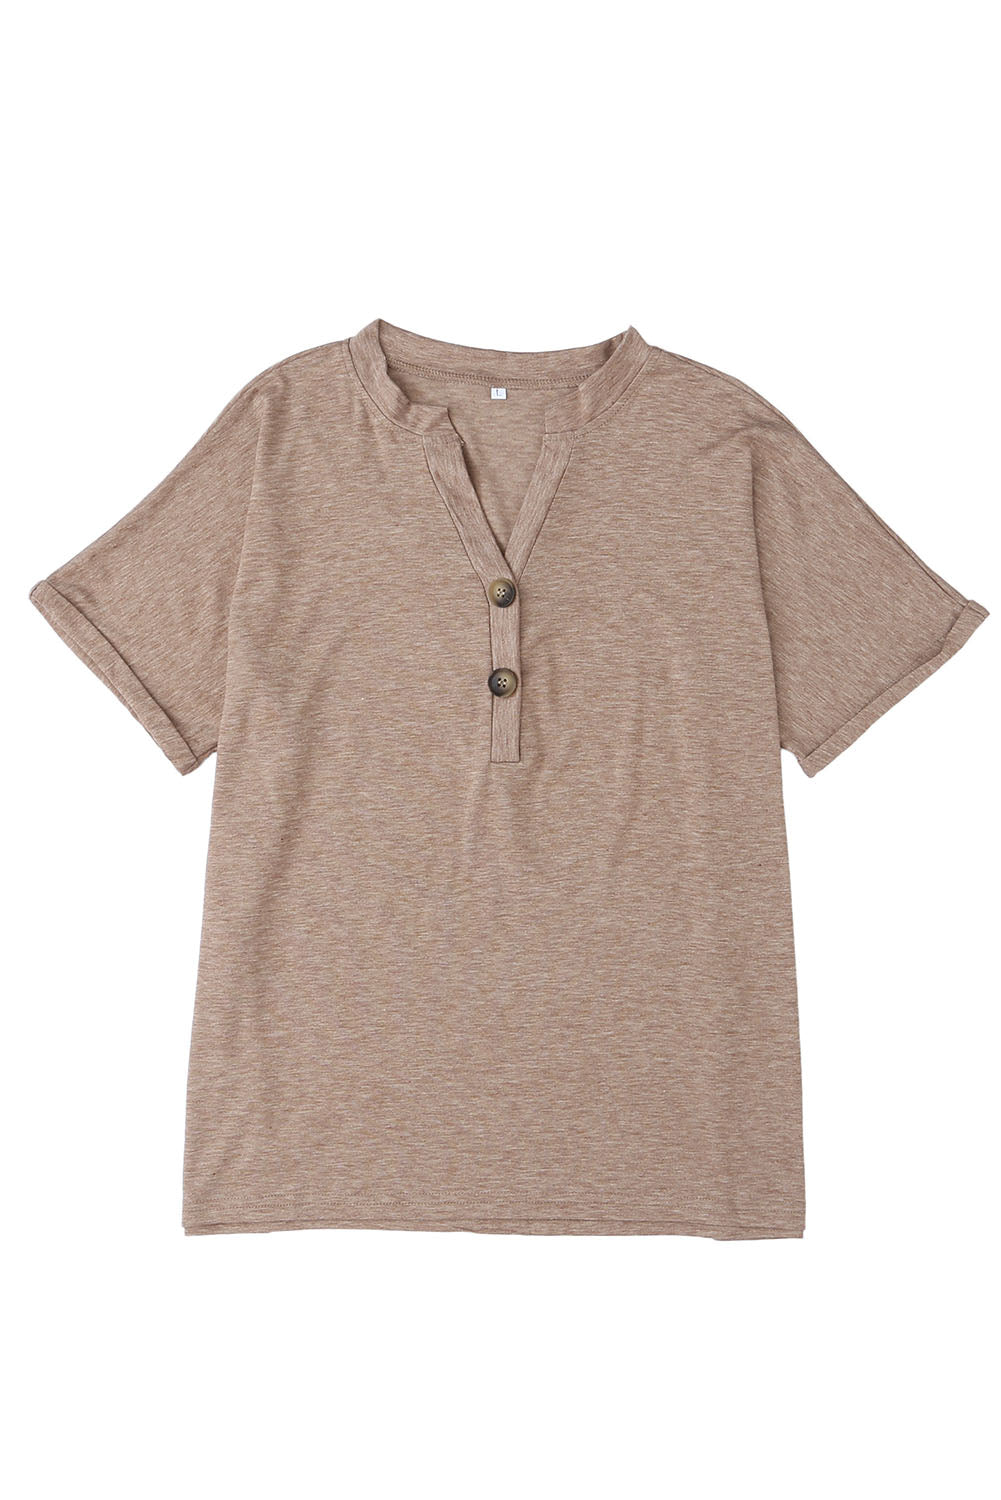 Khakifarbenes T-Shirt mit geknöpftem V-Ausschnitt und gerollten Ärmeln